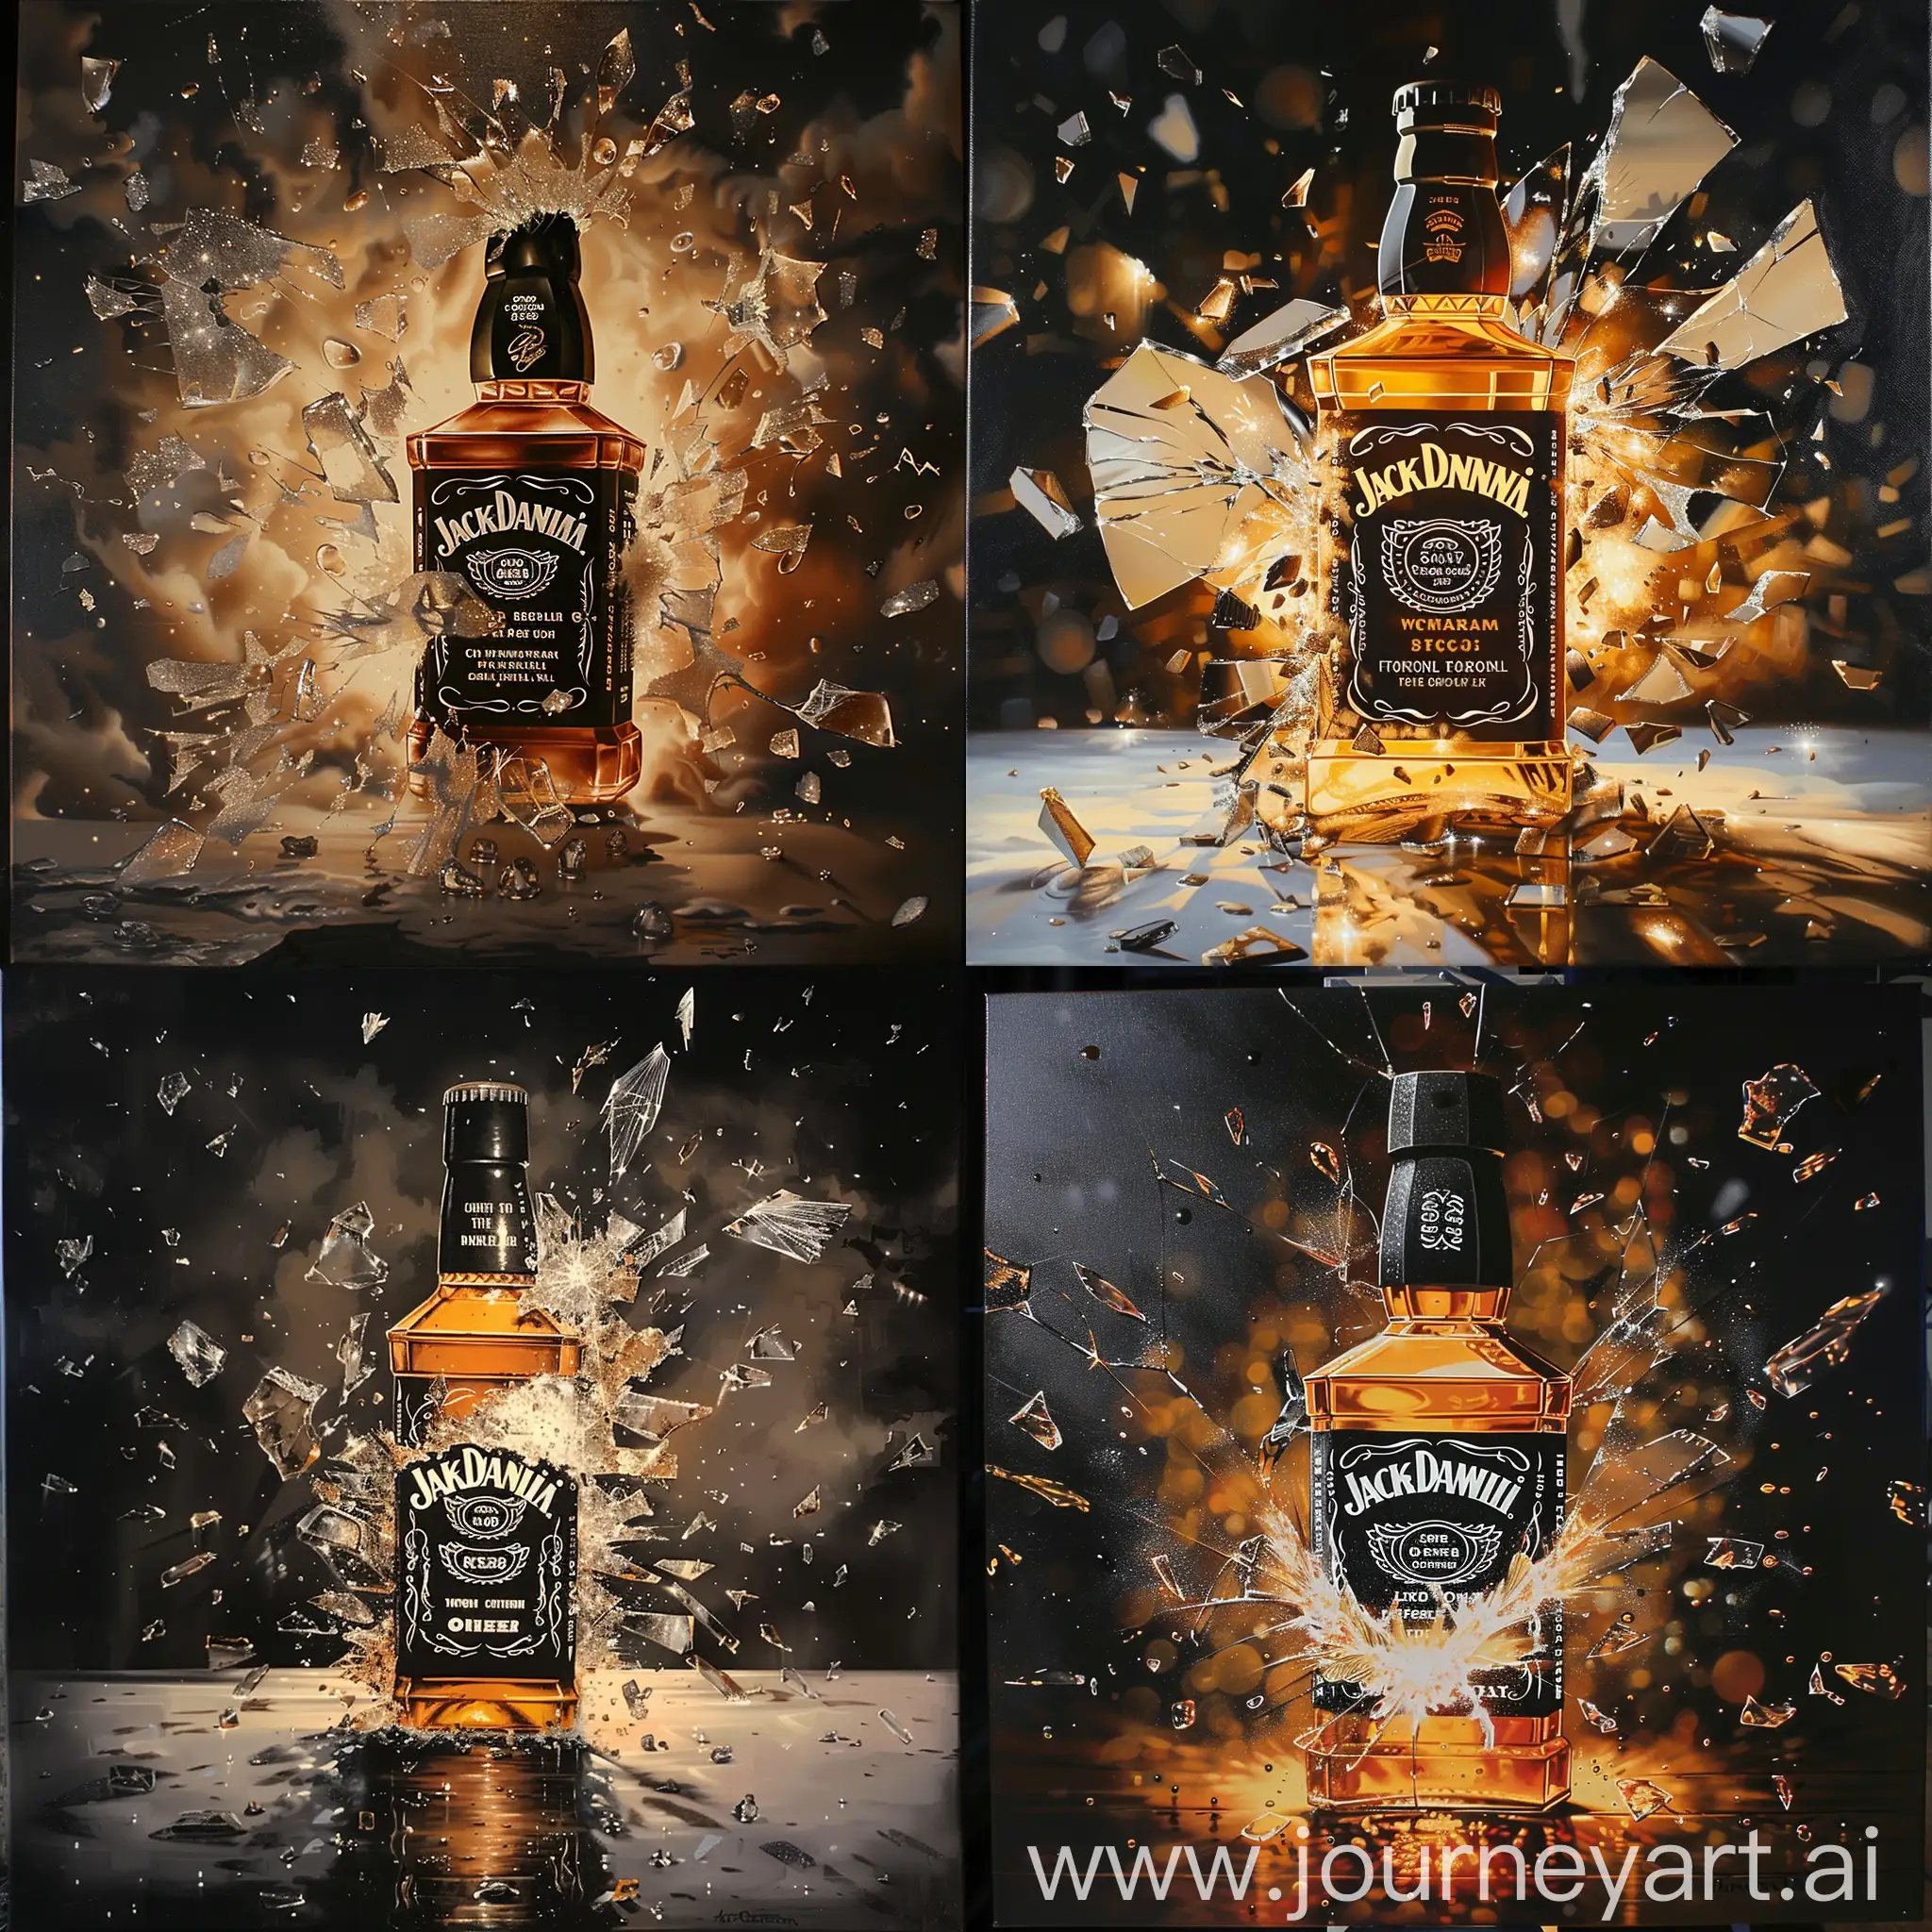 Broken-Jack-Daniels-Bottle-in-Realistic-Epoxy-Canvas-Art